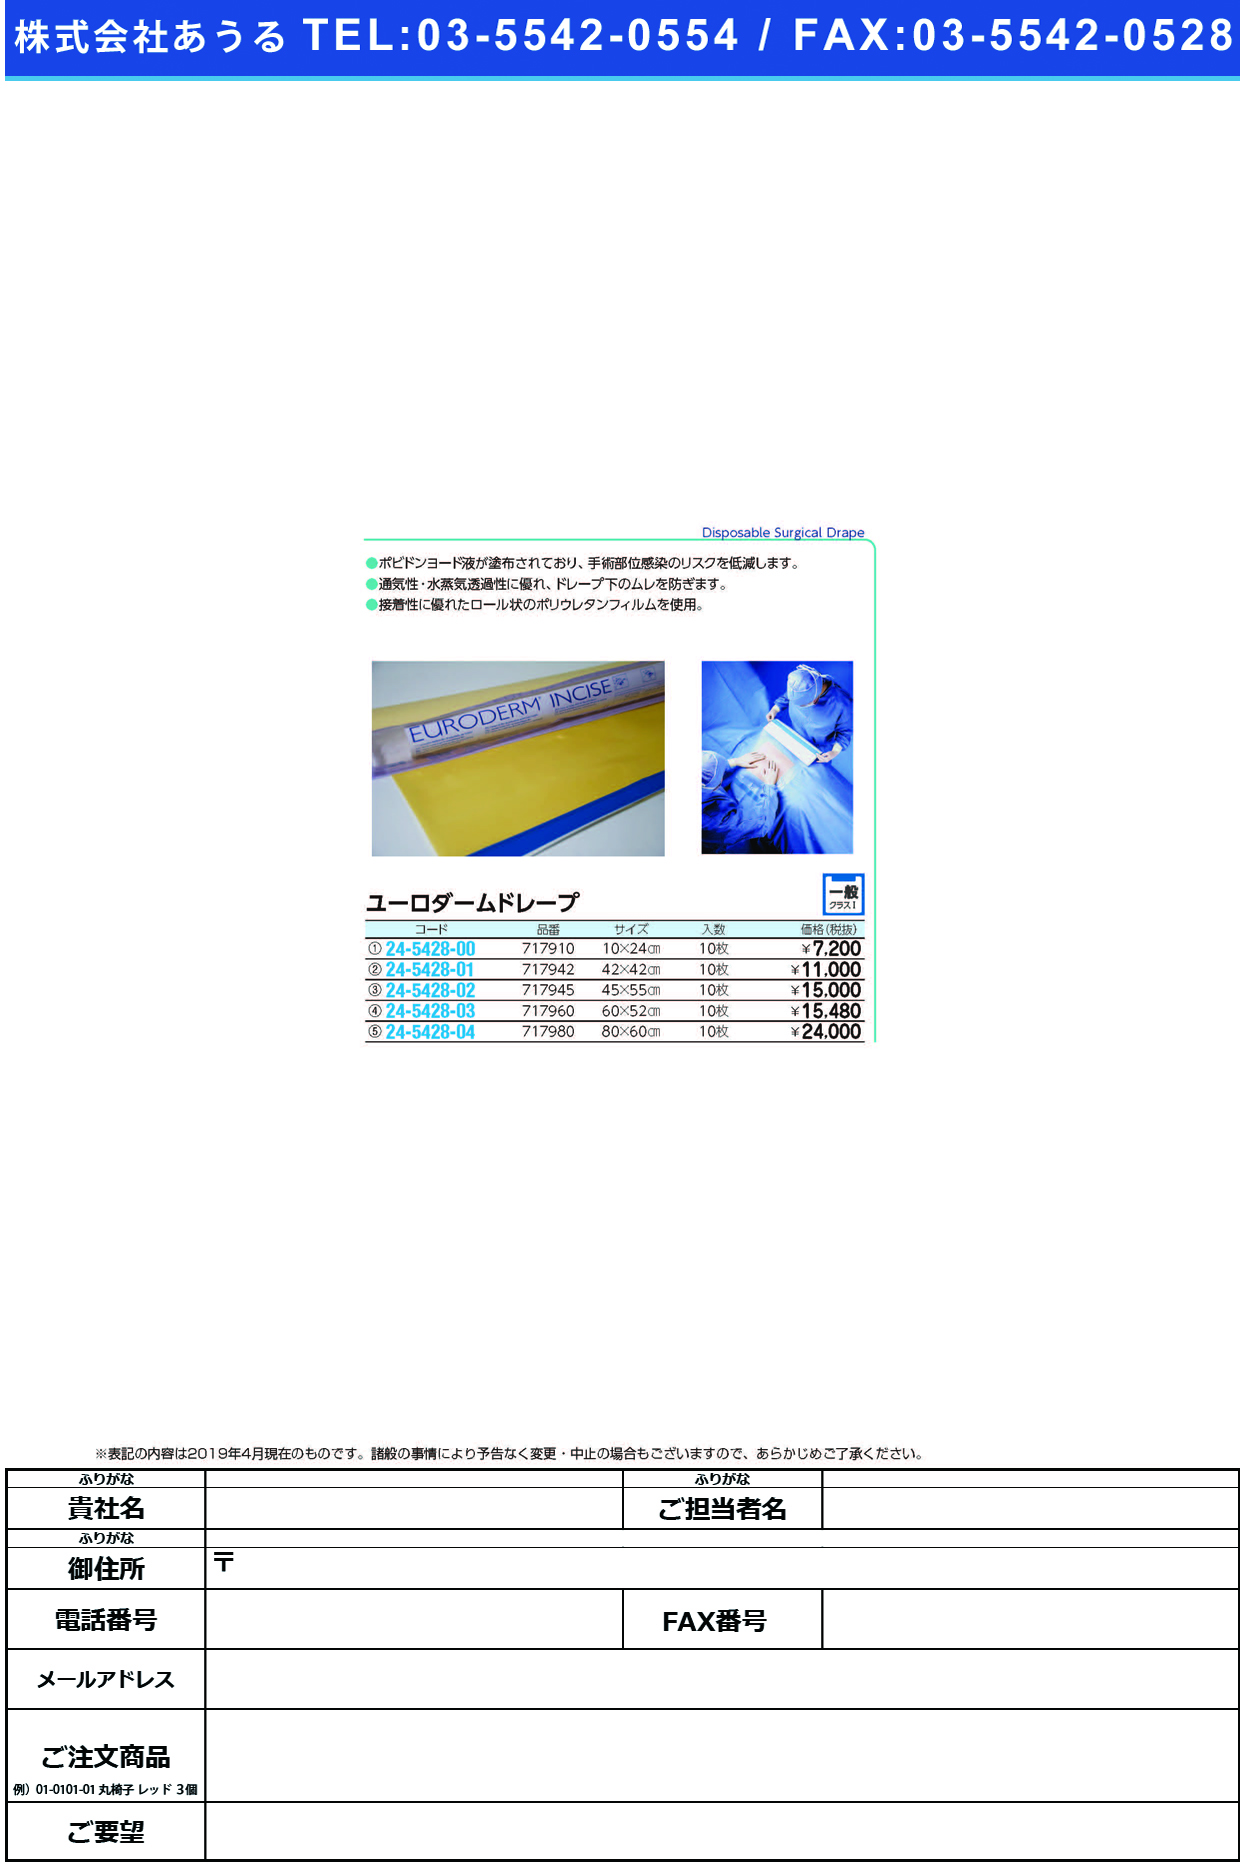 (24-5428-00)ユーロダームドレープ 717910(10X24CM)10ﾏｲ ﾕｰﾛﾀﾞｰﾑﾄﾞﾚｰﾌﾟ【1箱単位】【2019年カタログ商品】